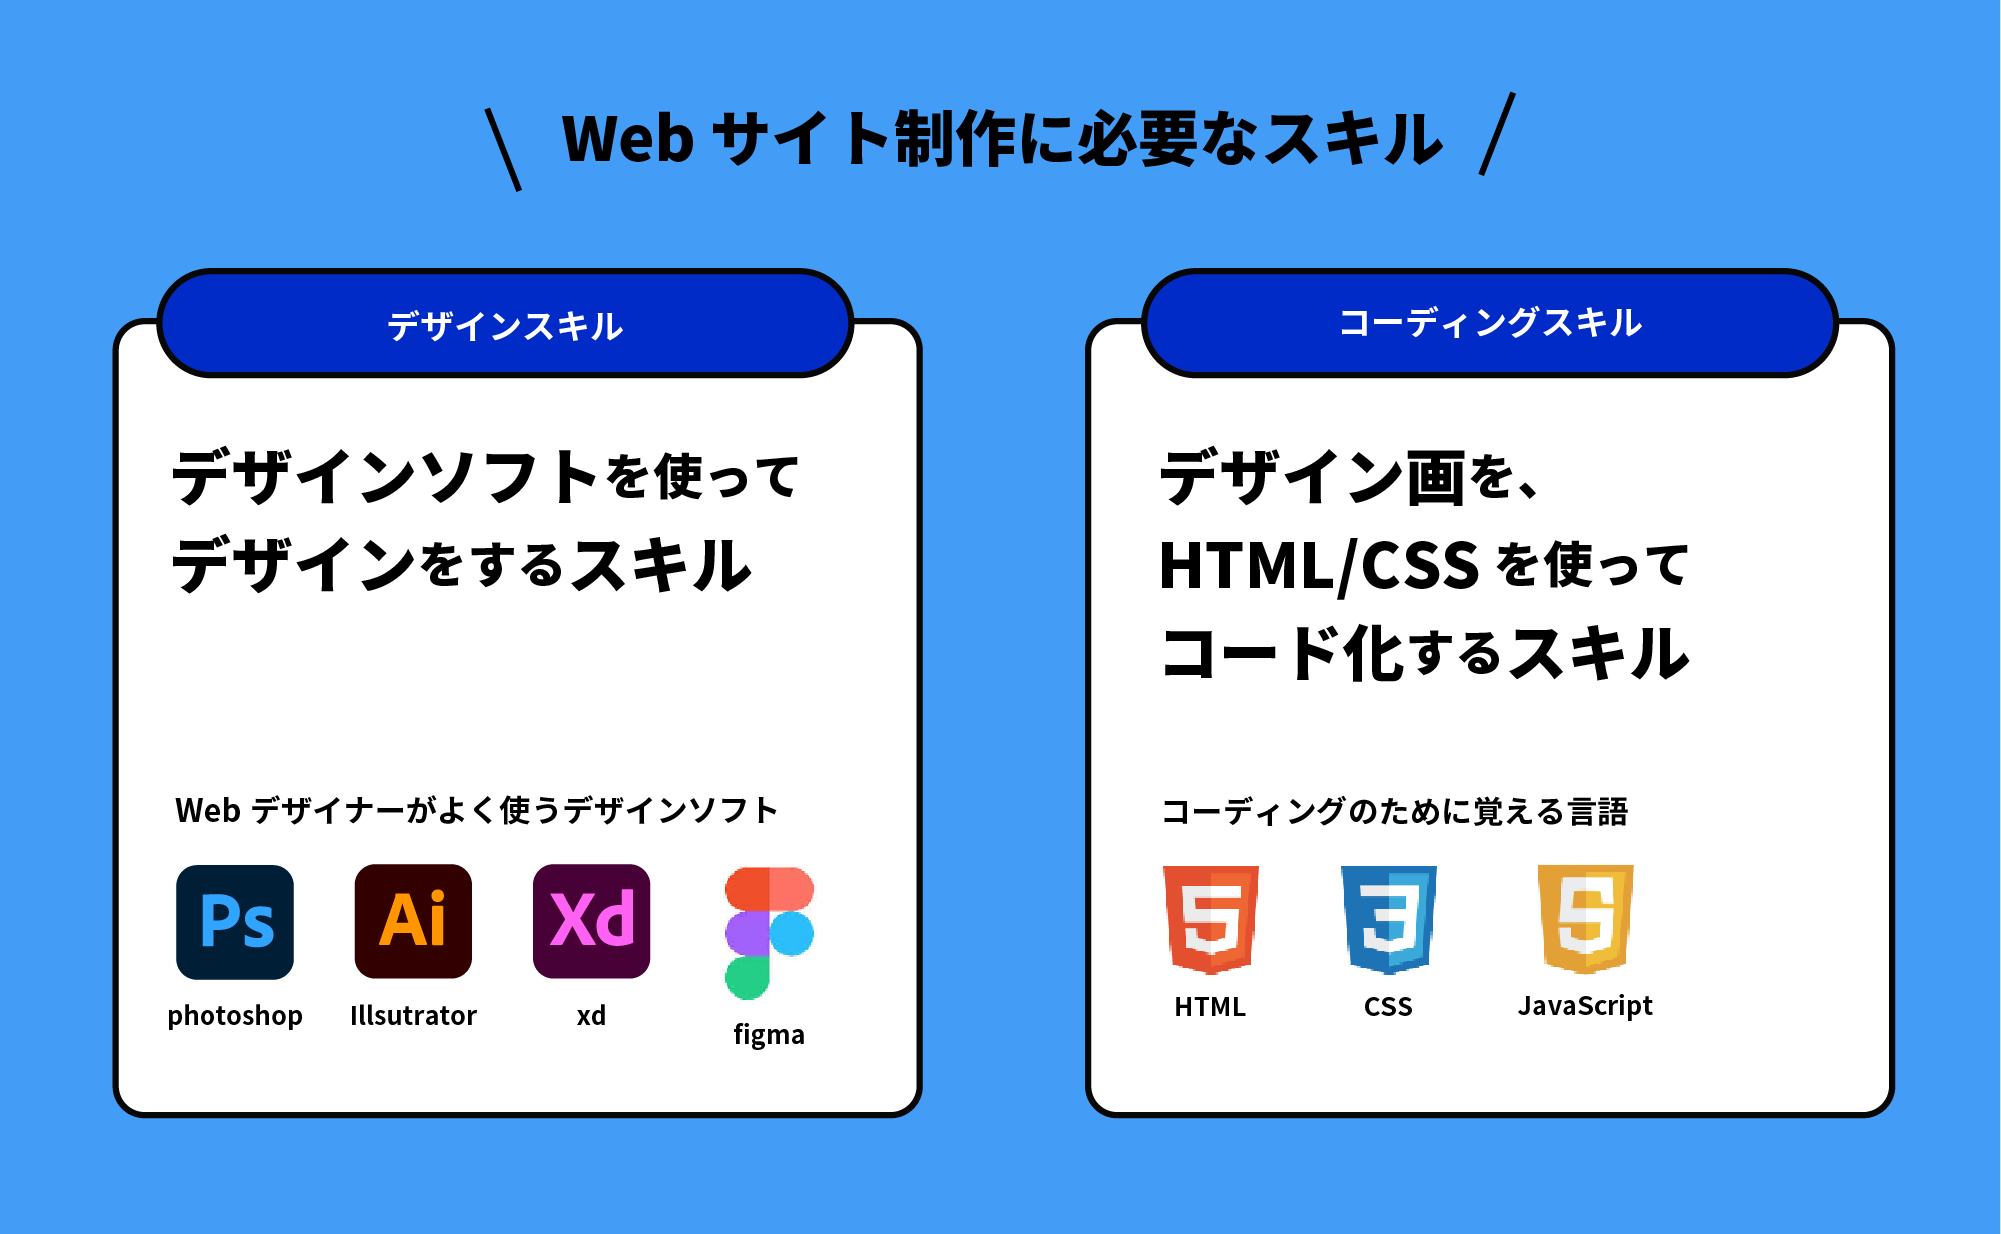 Webサイトに必要なスキルを表した図とイラスト。デザインは、デザインソフトを使ってデザインするスキル。必要なソフトはフォトショ・イラレ・Xd・Figma。 コーディングは、デザインがをHTML・CSSを使ってコード化するスキルで、必要な知識はHTMLとCSS、JavaScript